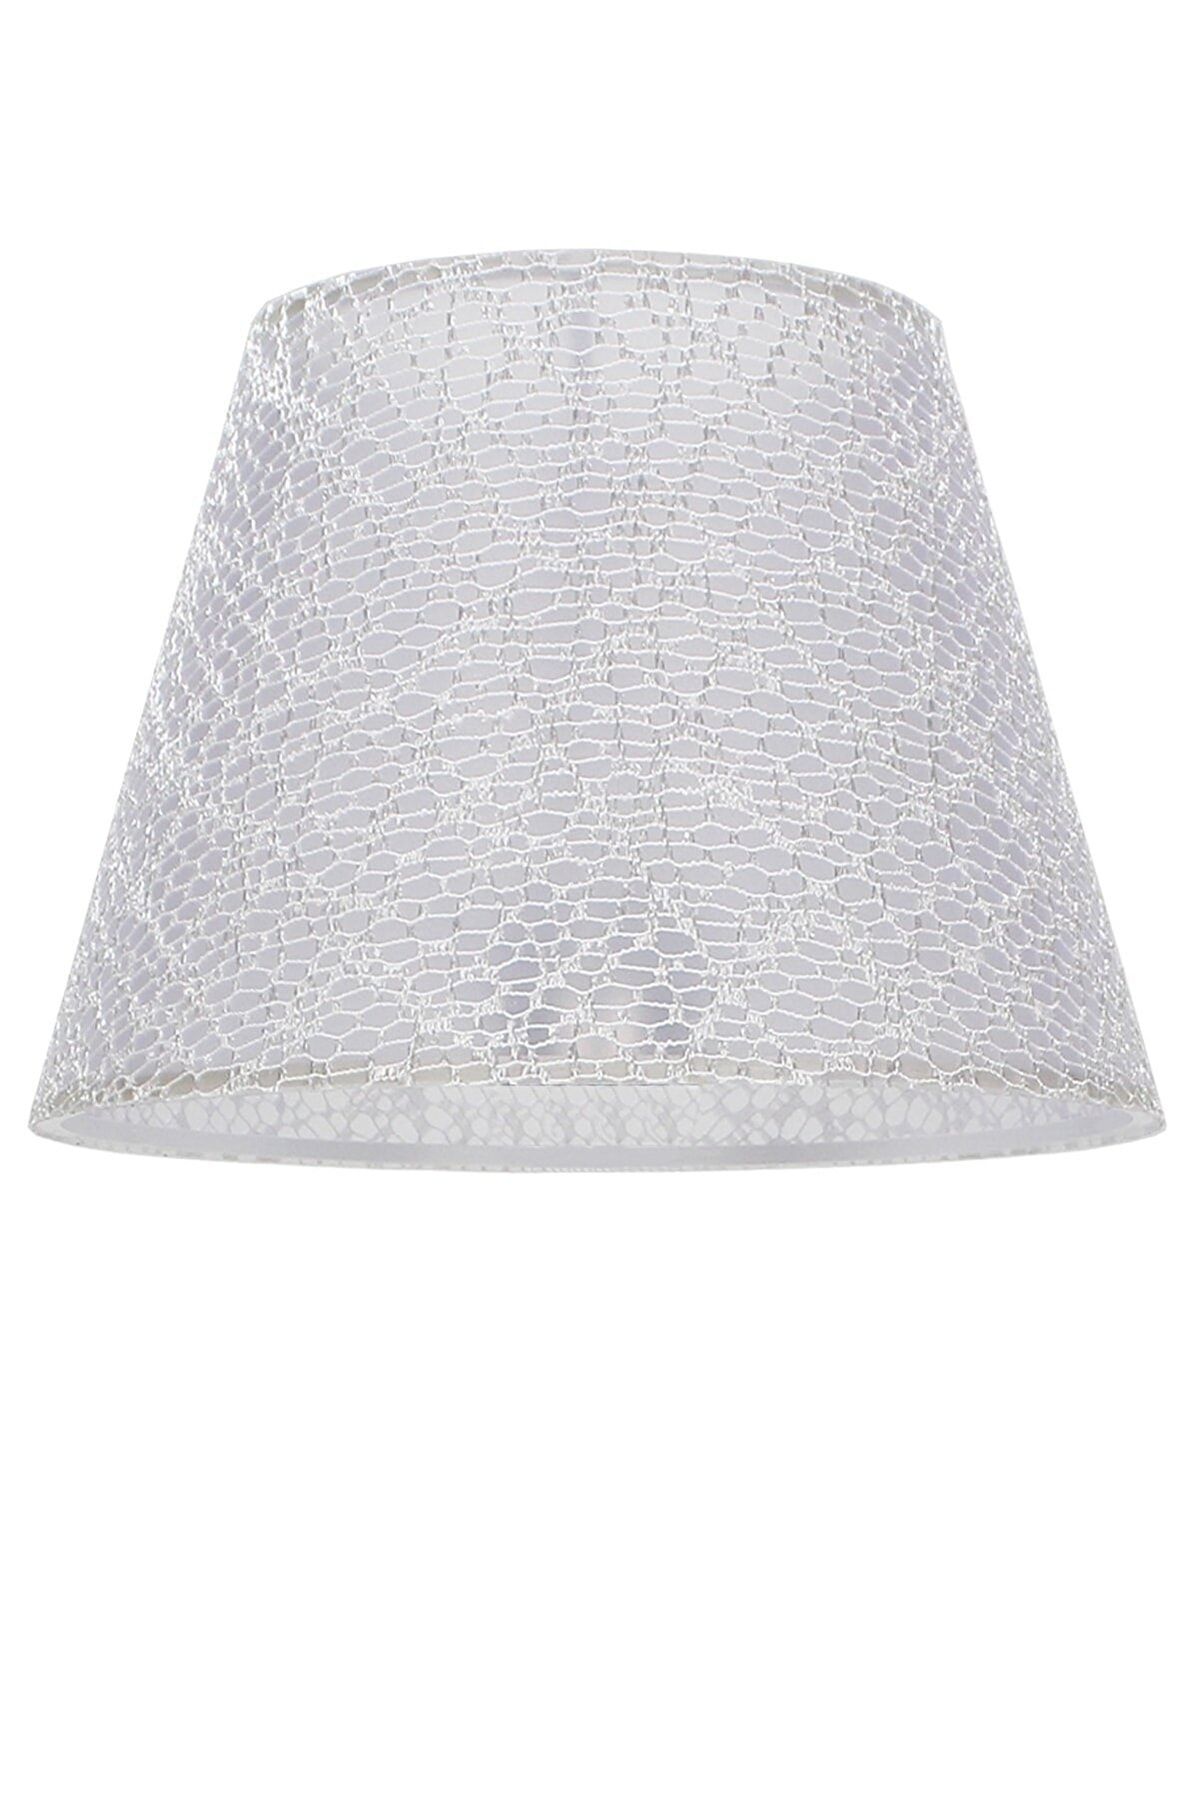 BBY HOME & DESIGN Abajur Şapkası Moneo Model